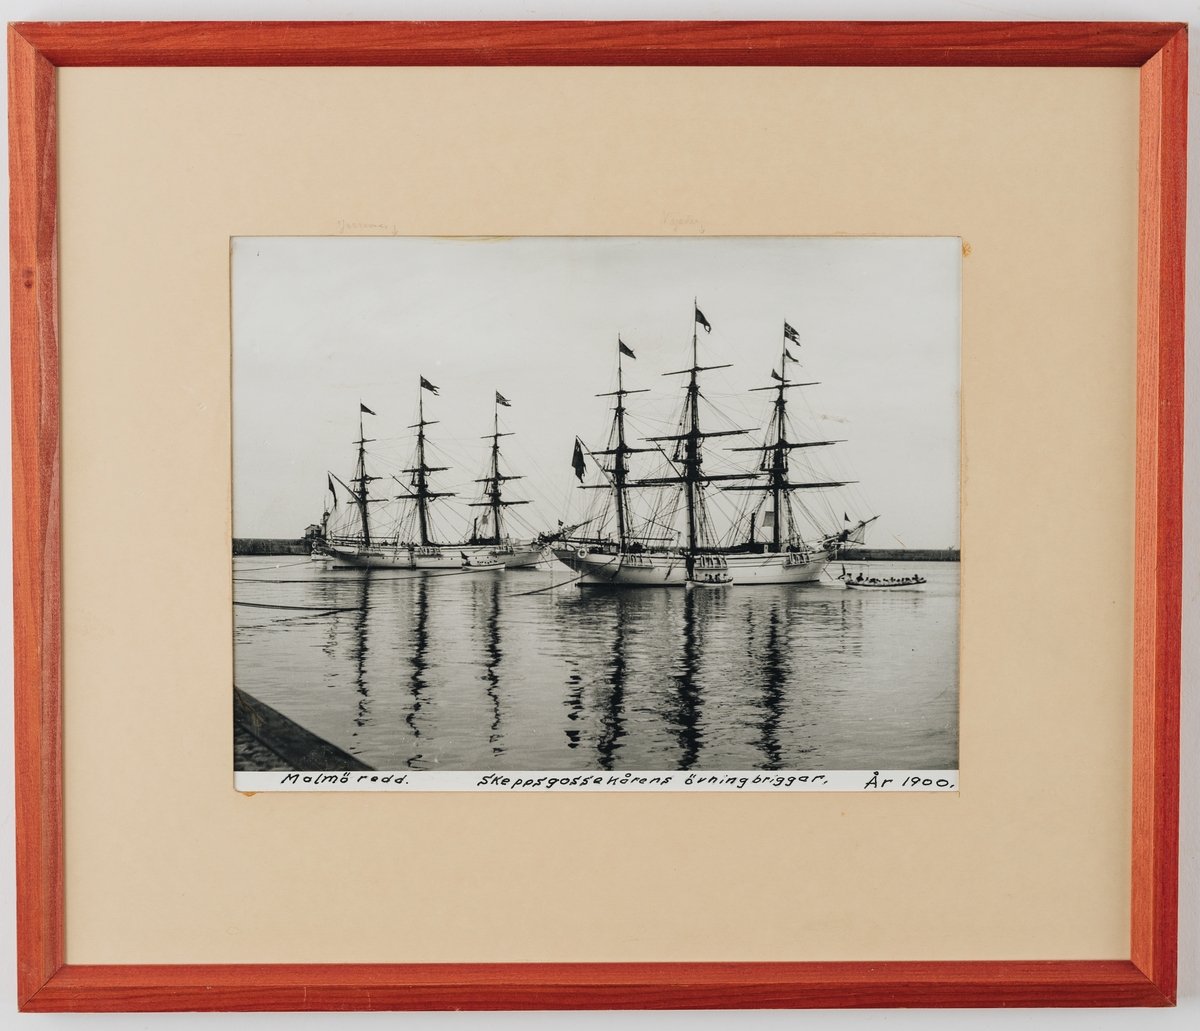 Bilden visar skeppsgossefartygen Jarramas och Najaden till ankars på Malmö redd år 1900. Fartygen har hissat unionsflaggan i mitten och norsk flagga i fören.